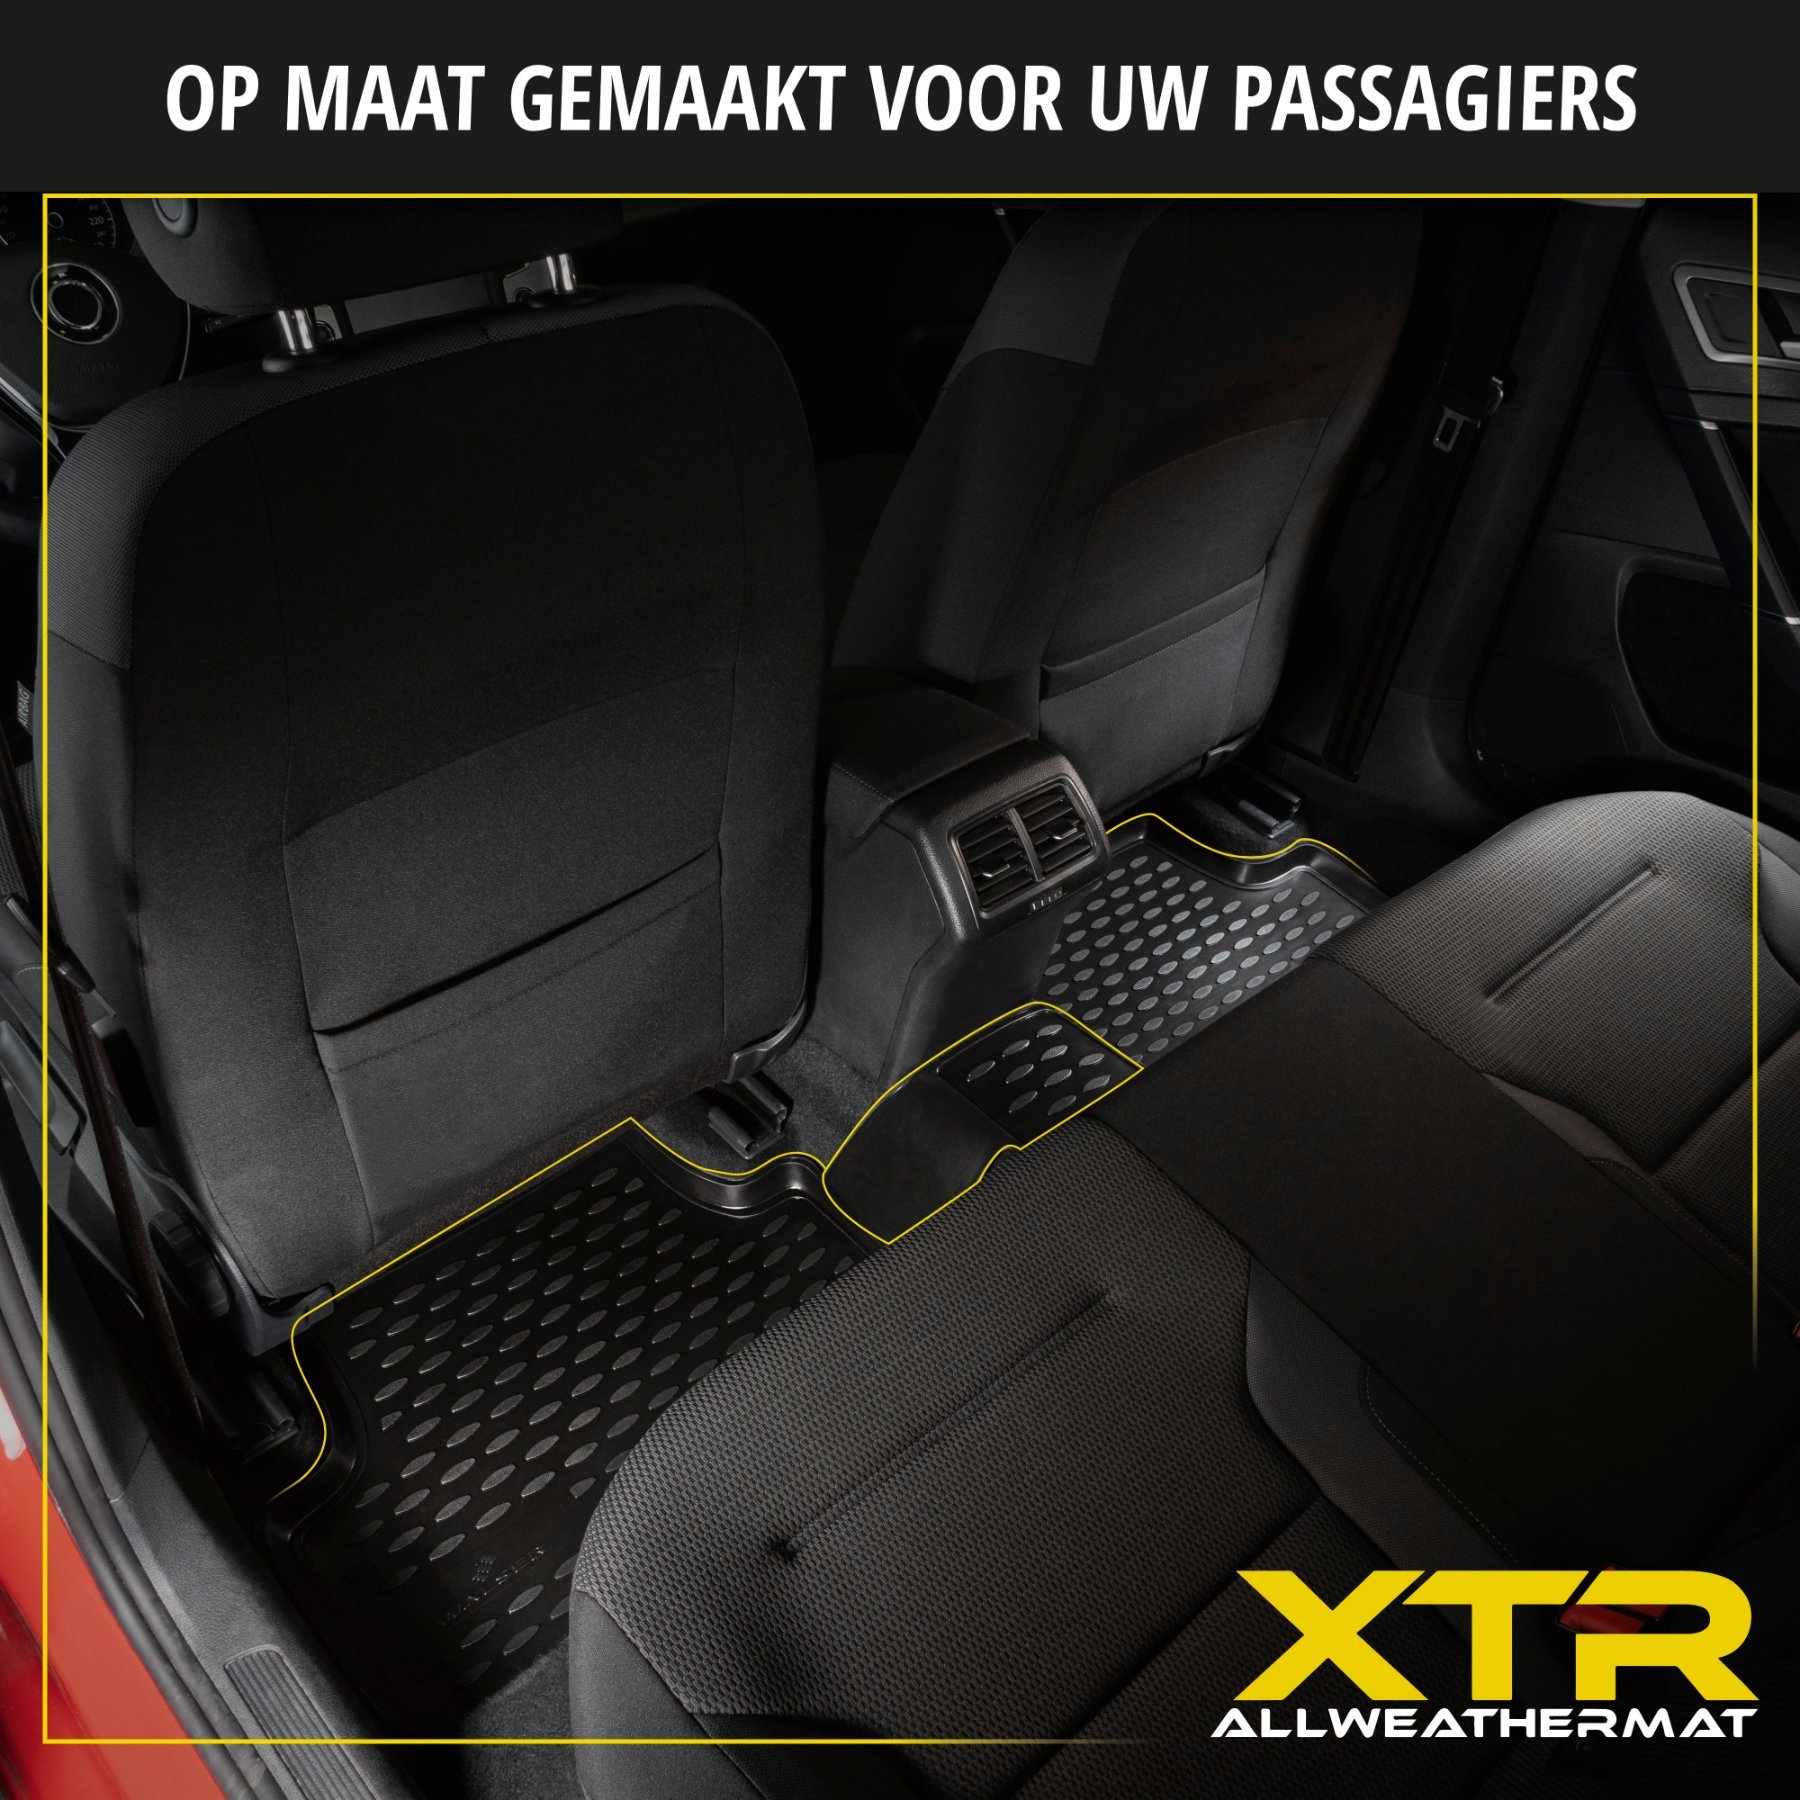 Rubberen Voetmatten XTR geschikt voor BMW 1 (F20) 2011 - 06/2019